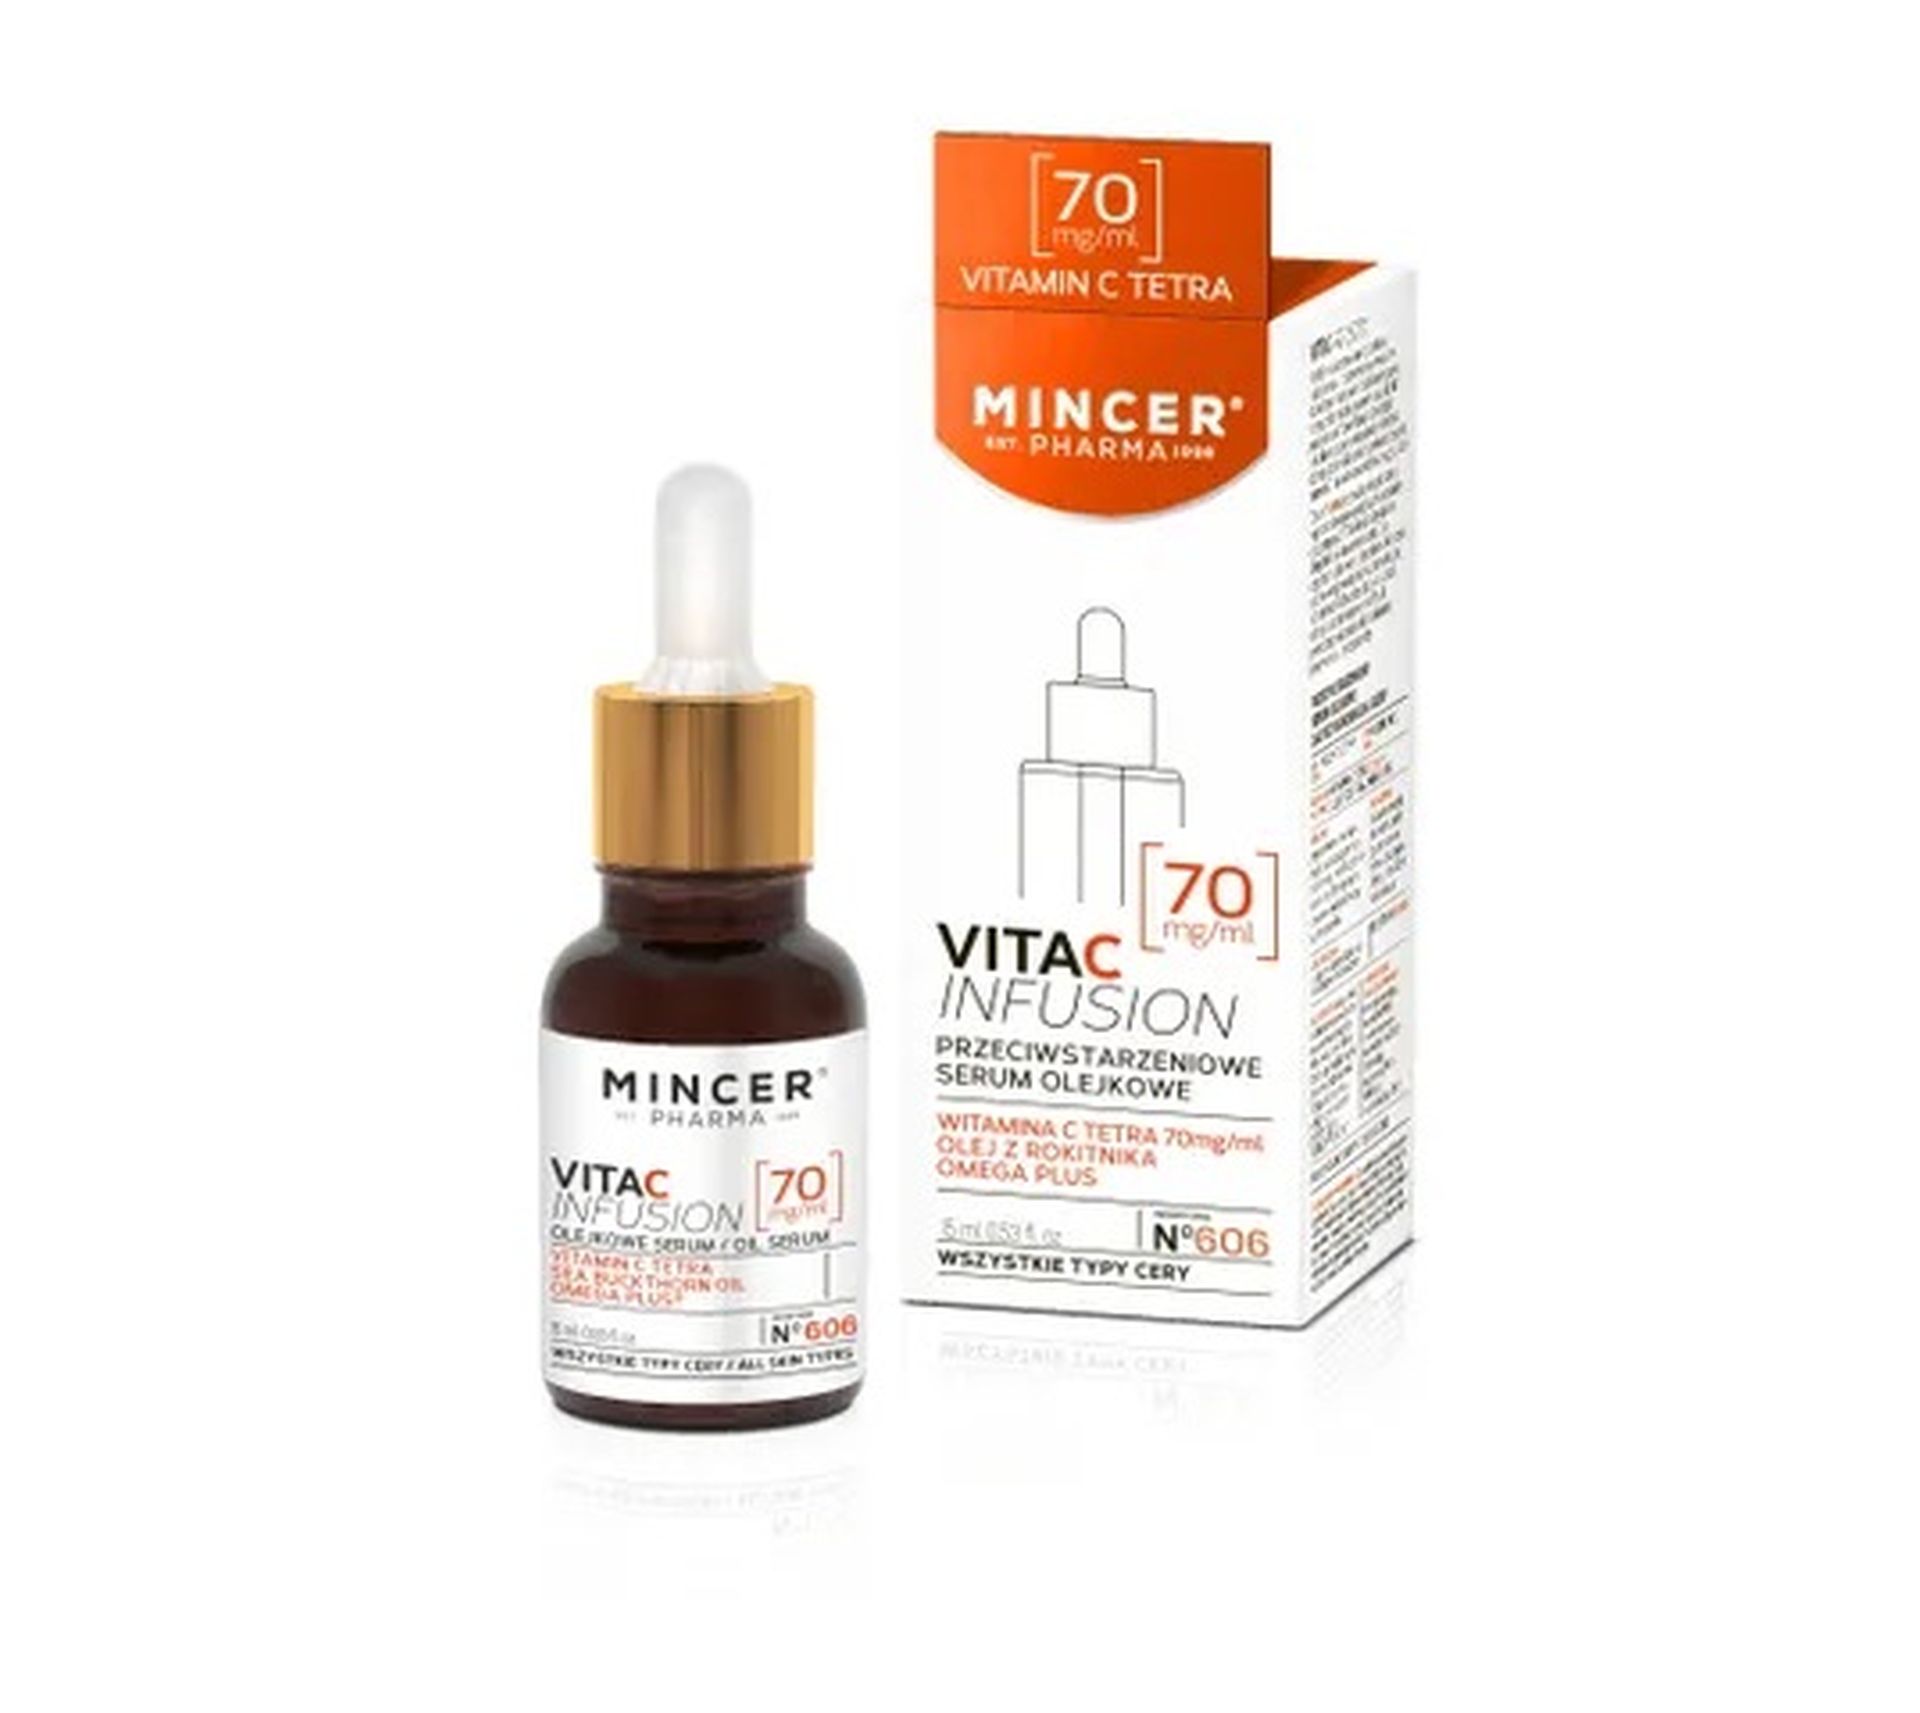 Mincer Pharma Vita C Infusion serum olejkowe do twarzy przeciwstarzeniowe nr 606 (15 ml)